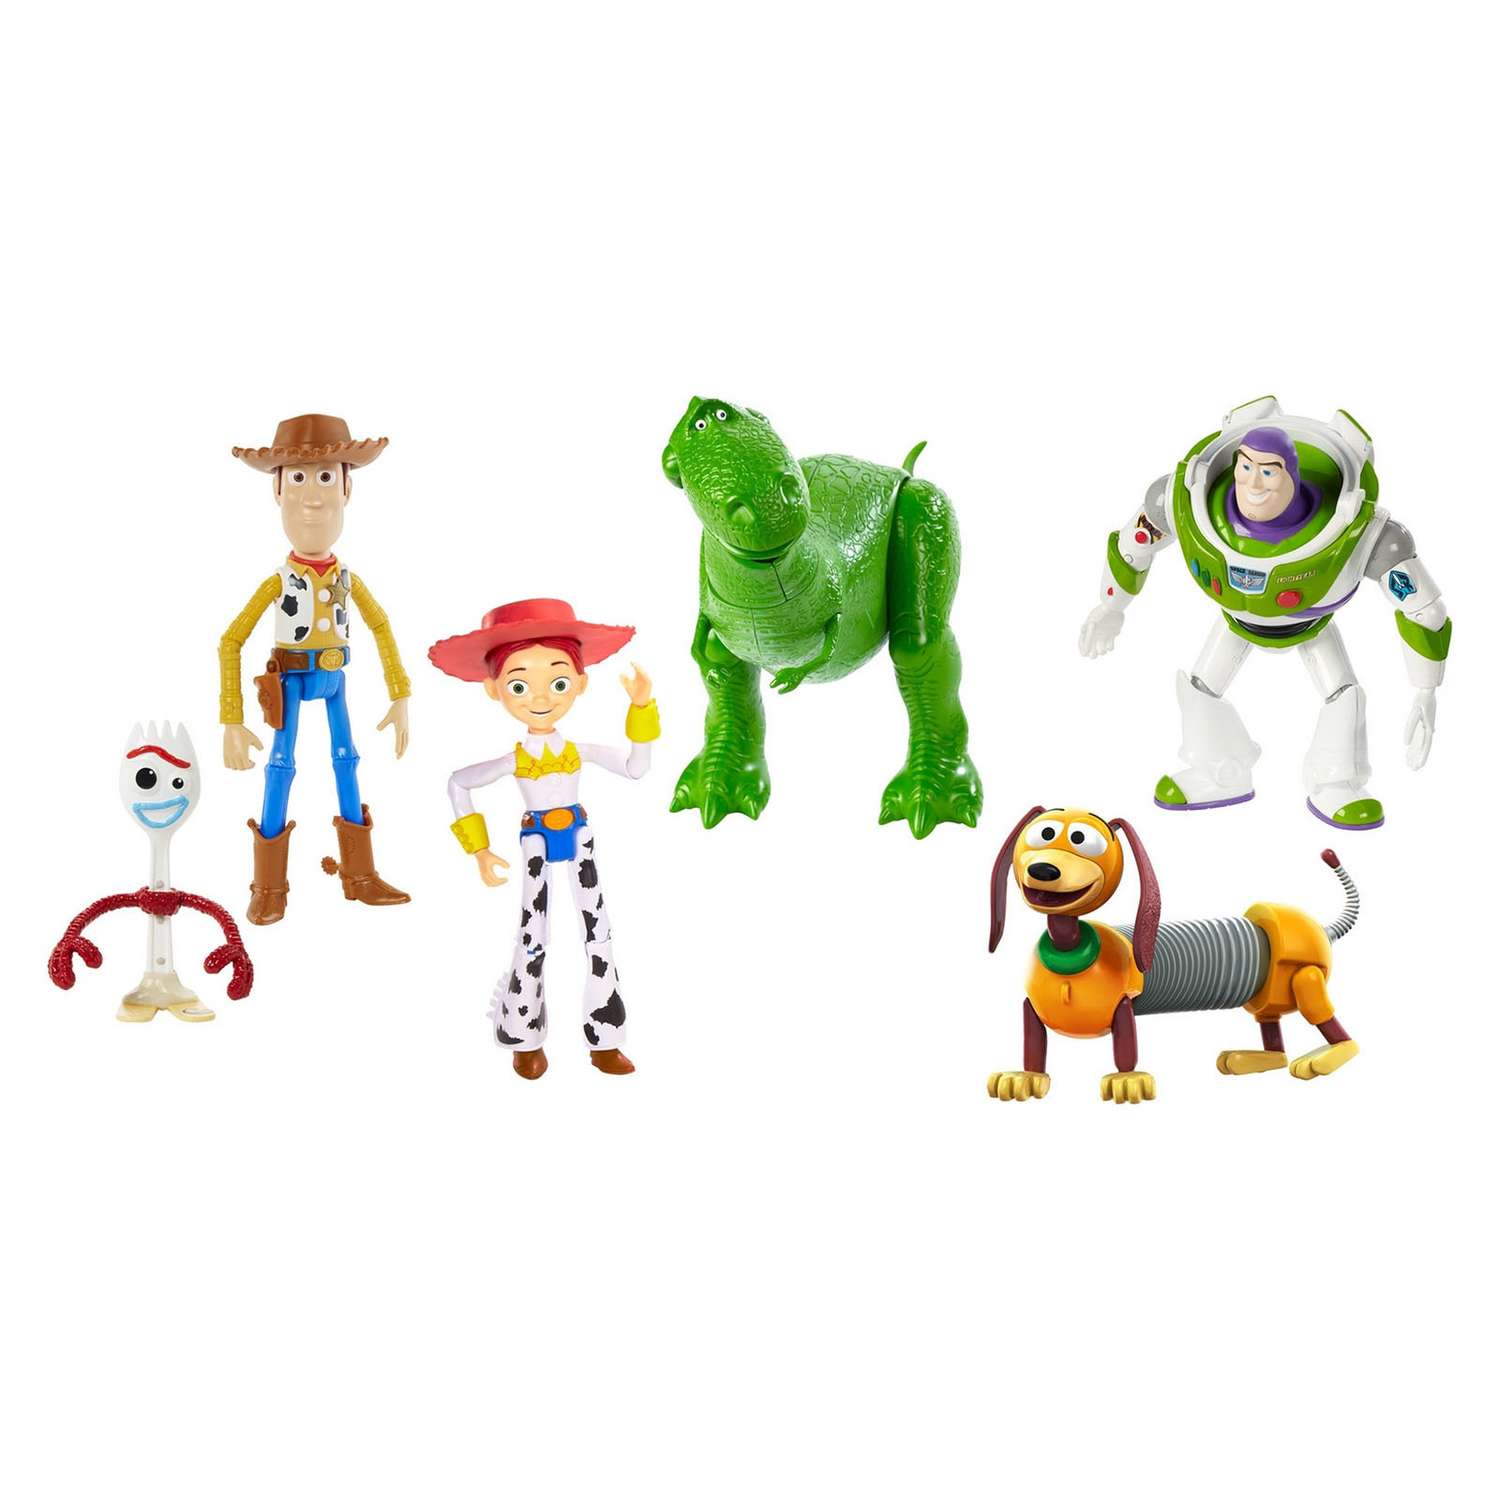 Набор фигурок Toy Story 4 Дорожное приключение 6шт GDL54 - фото 3